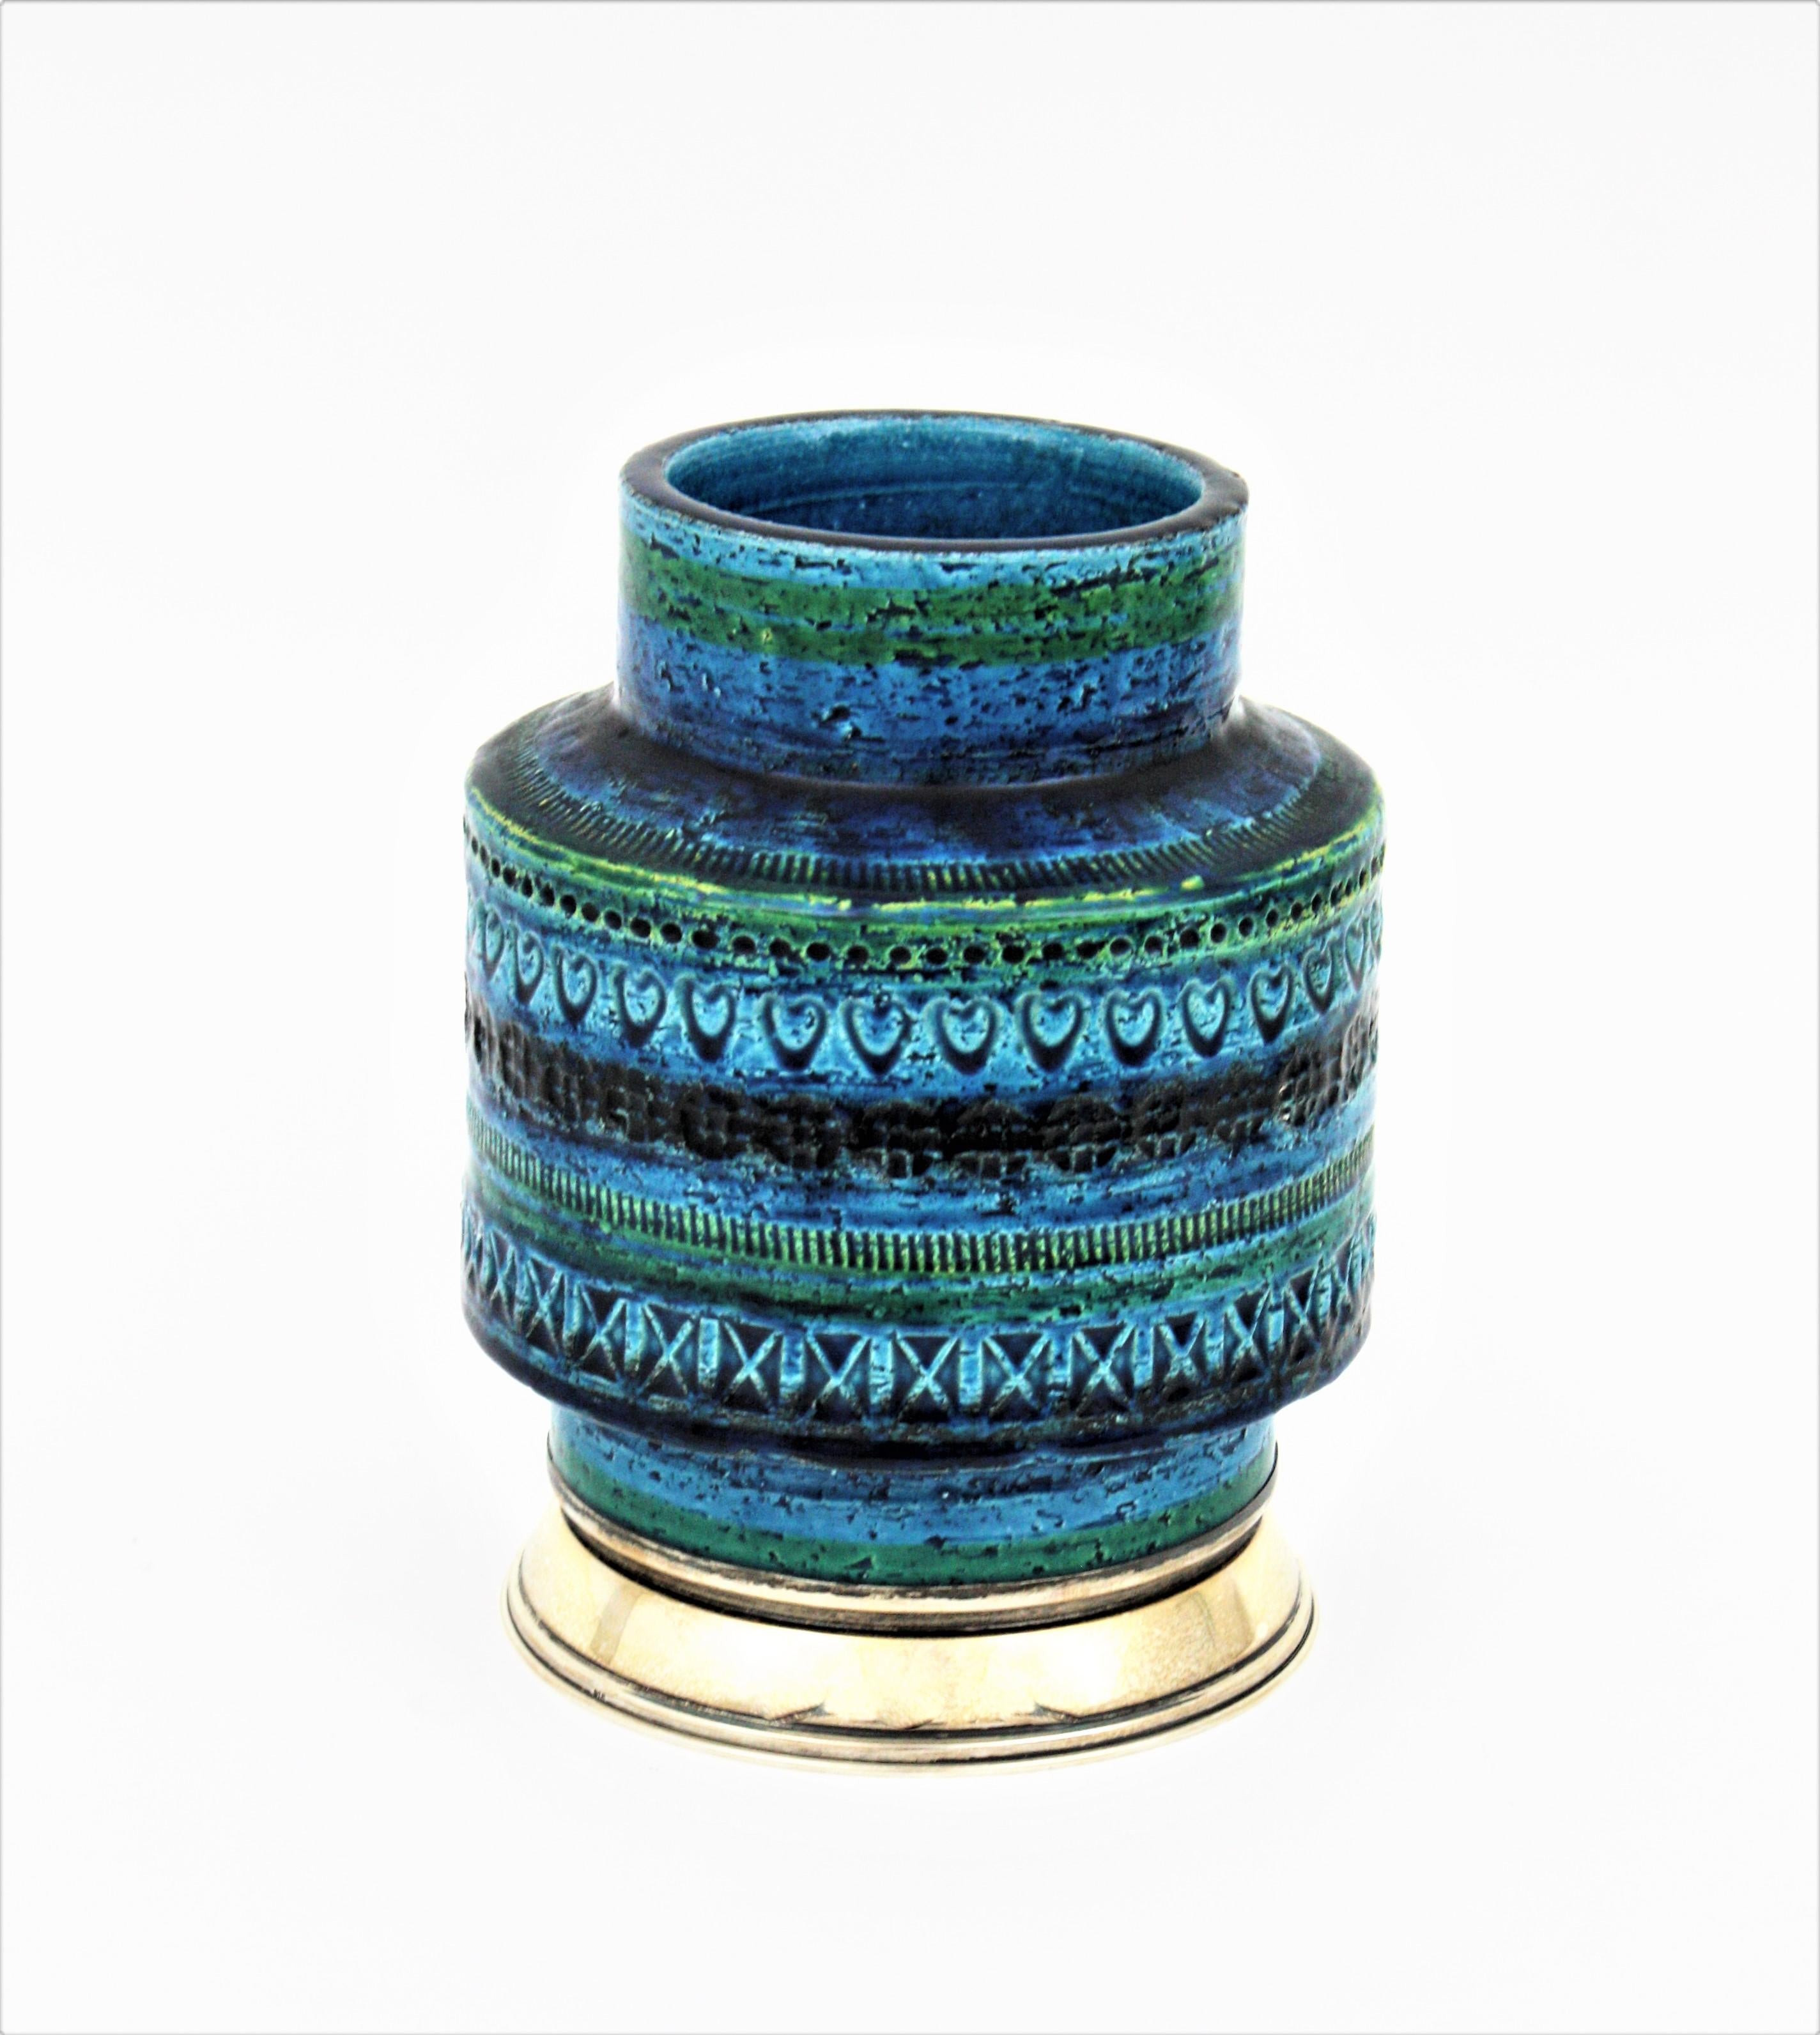 Vase aus glasierter Keramik 'Rimini blu' auf Sockel aus Sterlingsilber. Entworfen von Aldo Londi für by Bitossi. Italien, 1960er Jahre.
Diese auffällige Vase ist aus blau glasierter Keramik mit eingravierten Mustern, die den zentralen Teil umgeben.